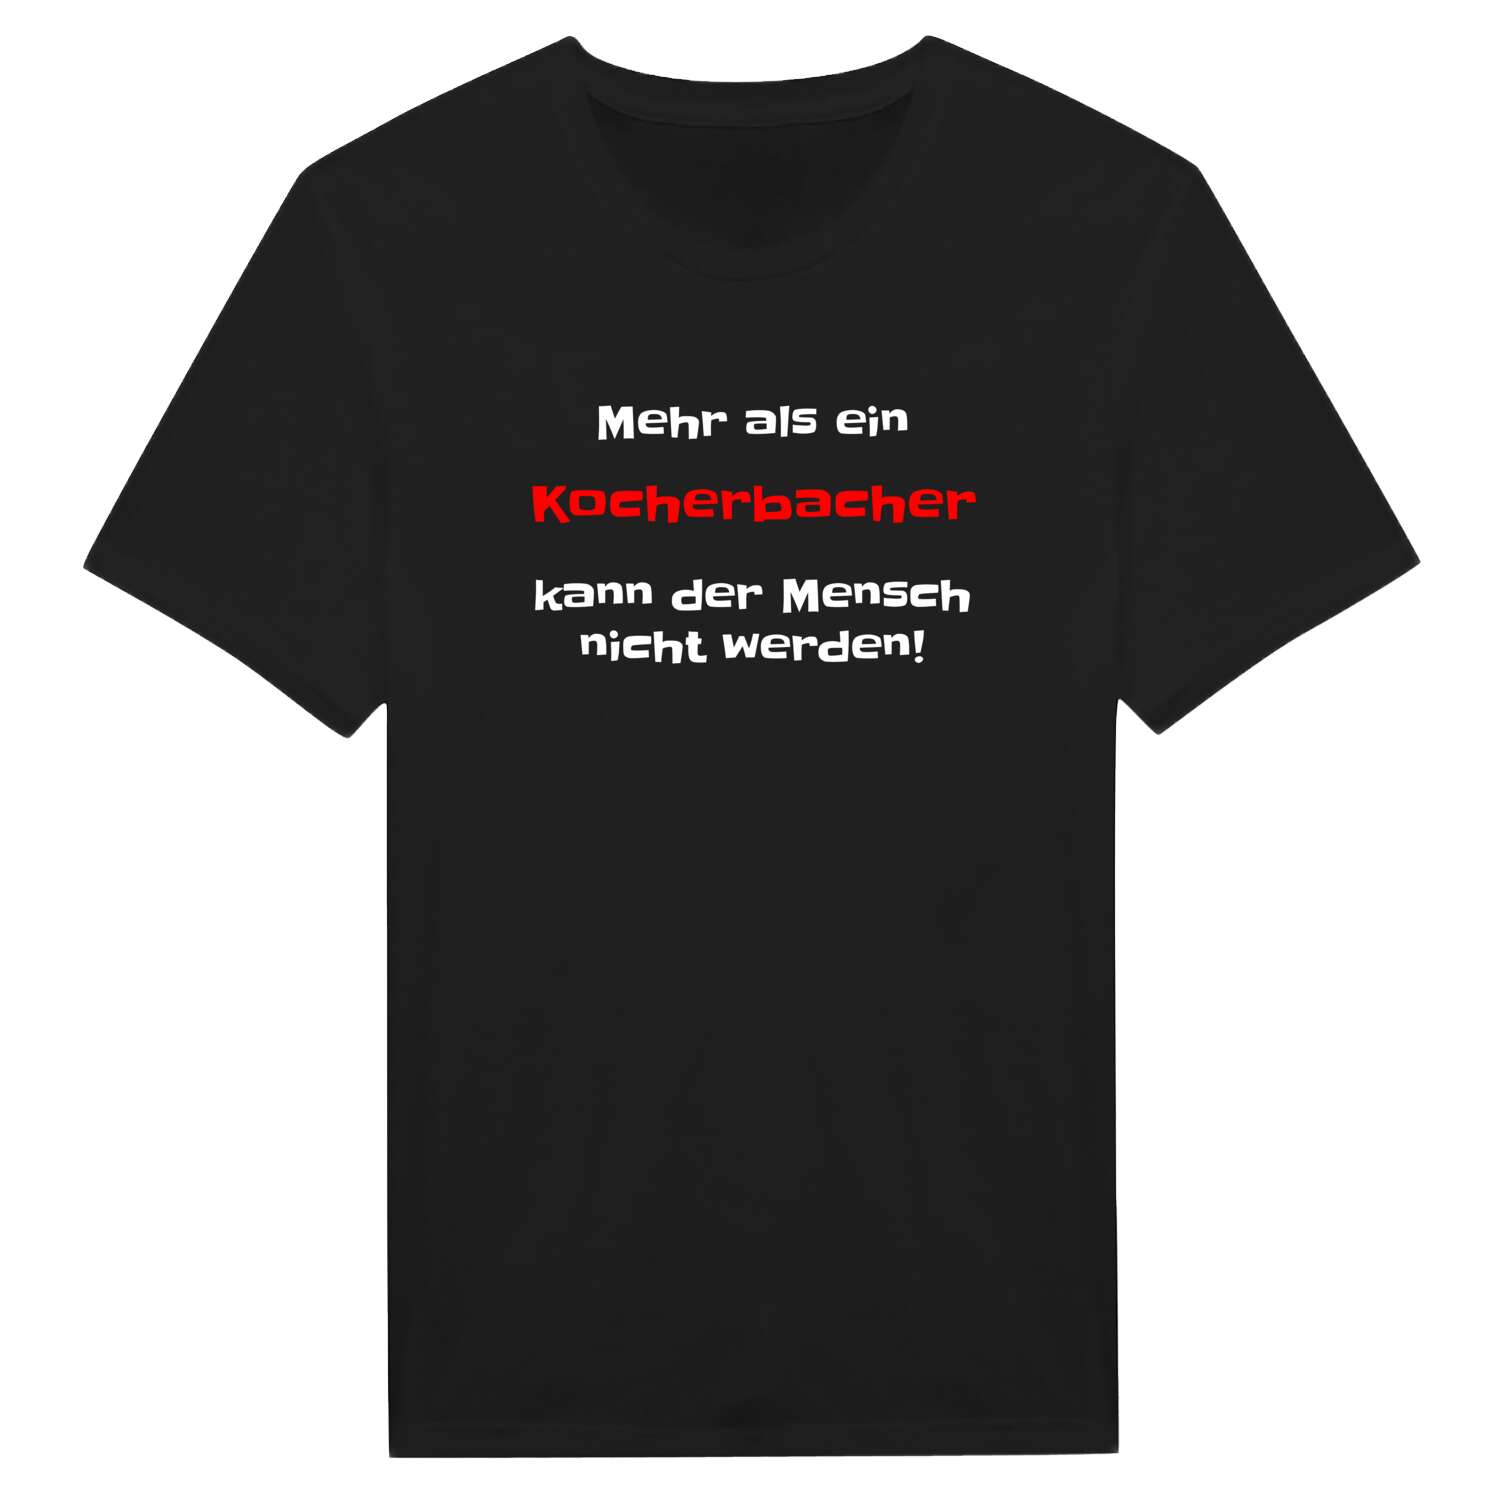 Kocherbach T-Shirt »Mehr als ein«